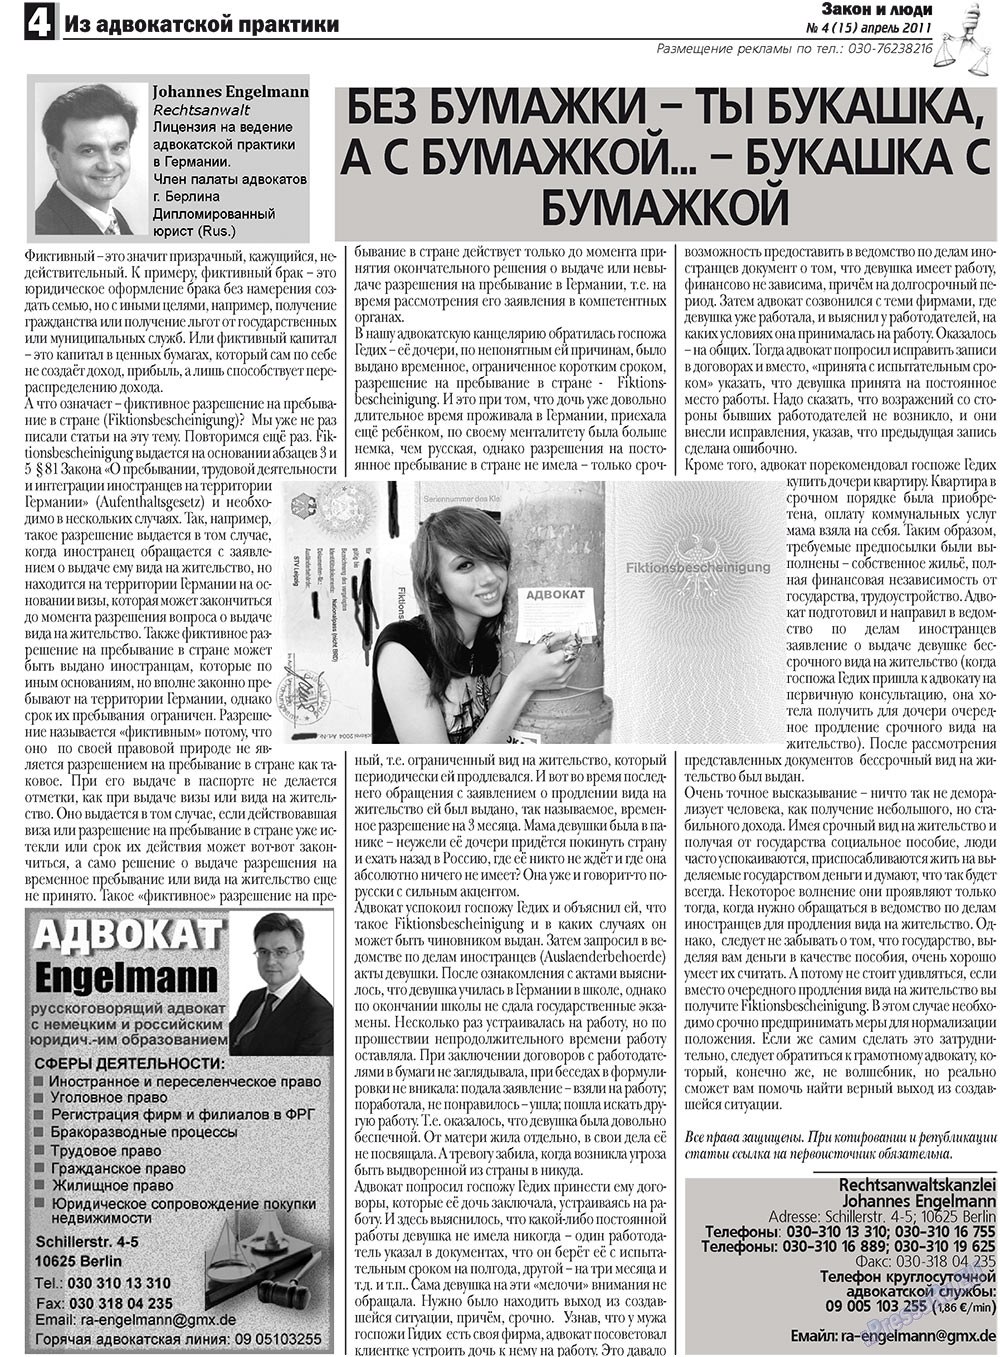 Закон и люди, газета. 2011 №4 стр.4